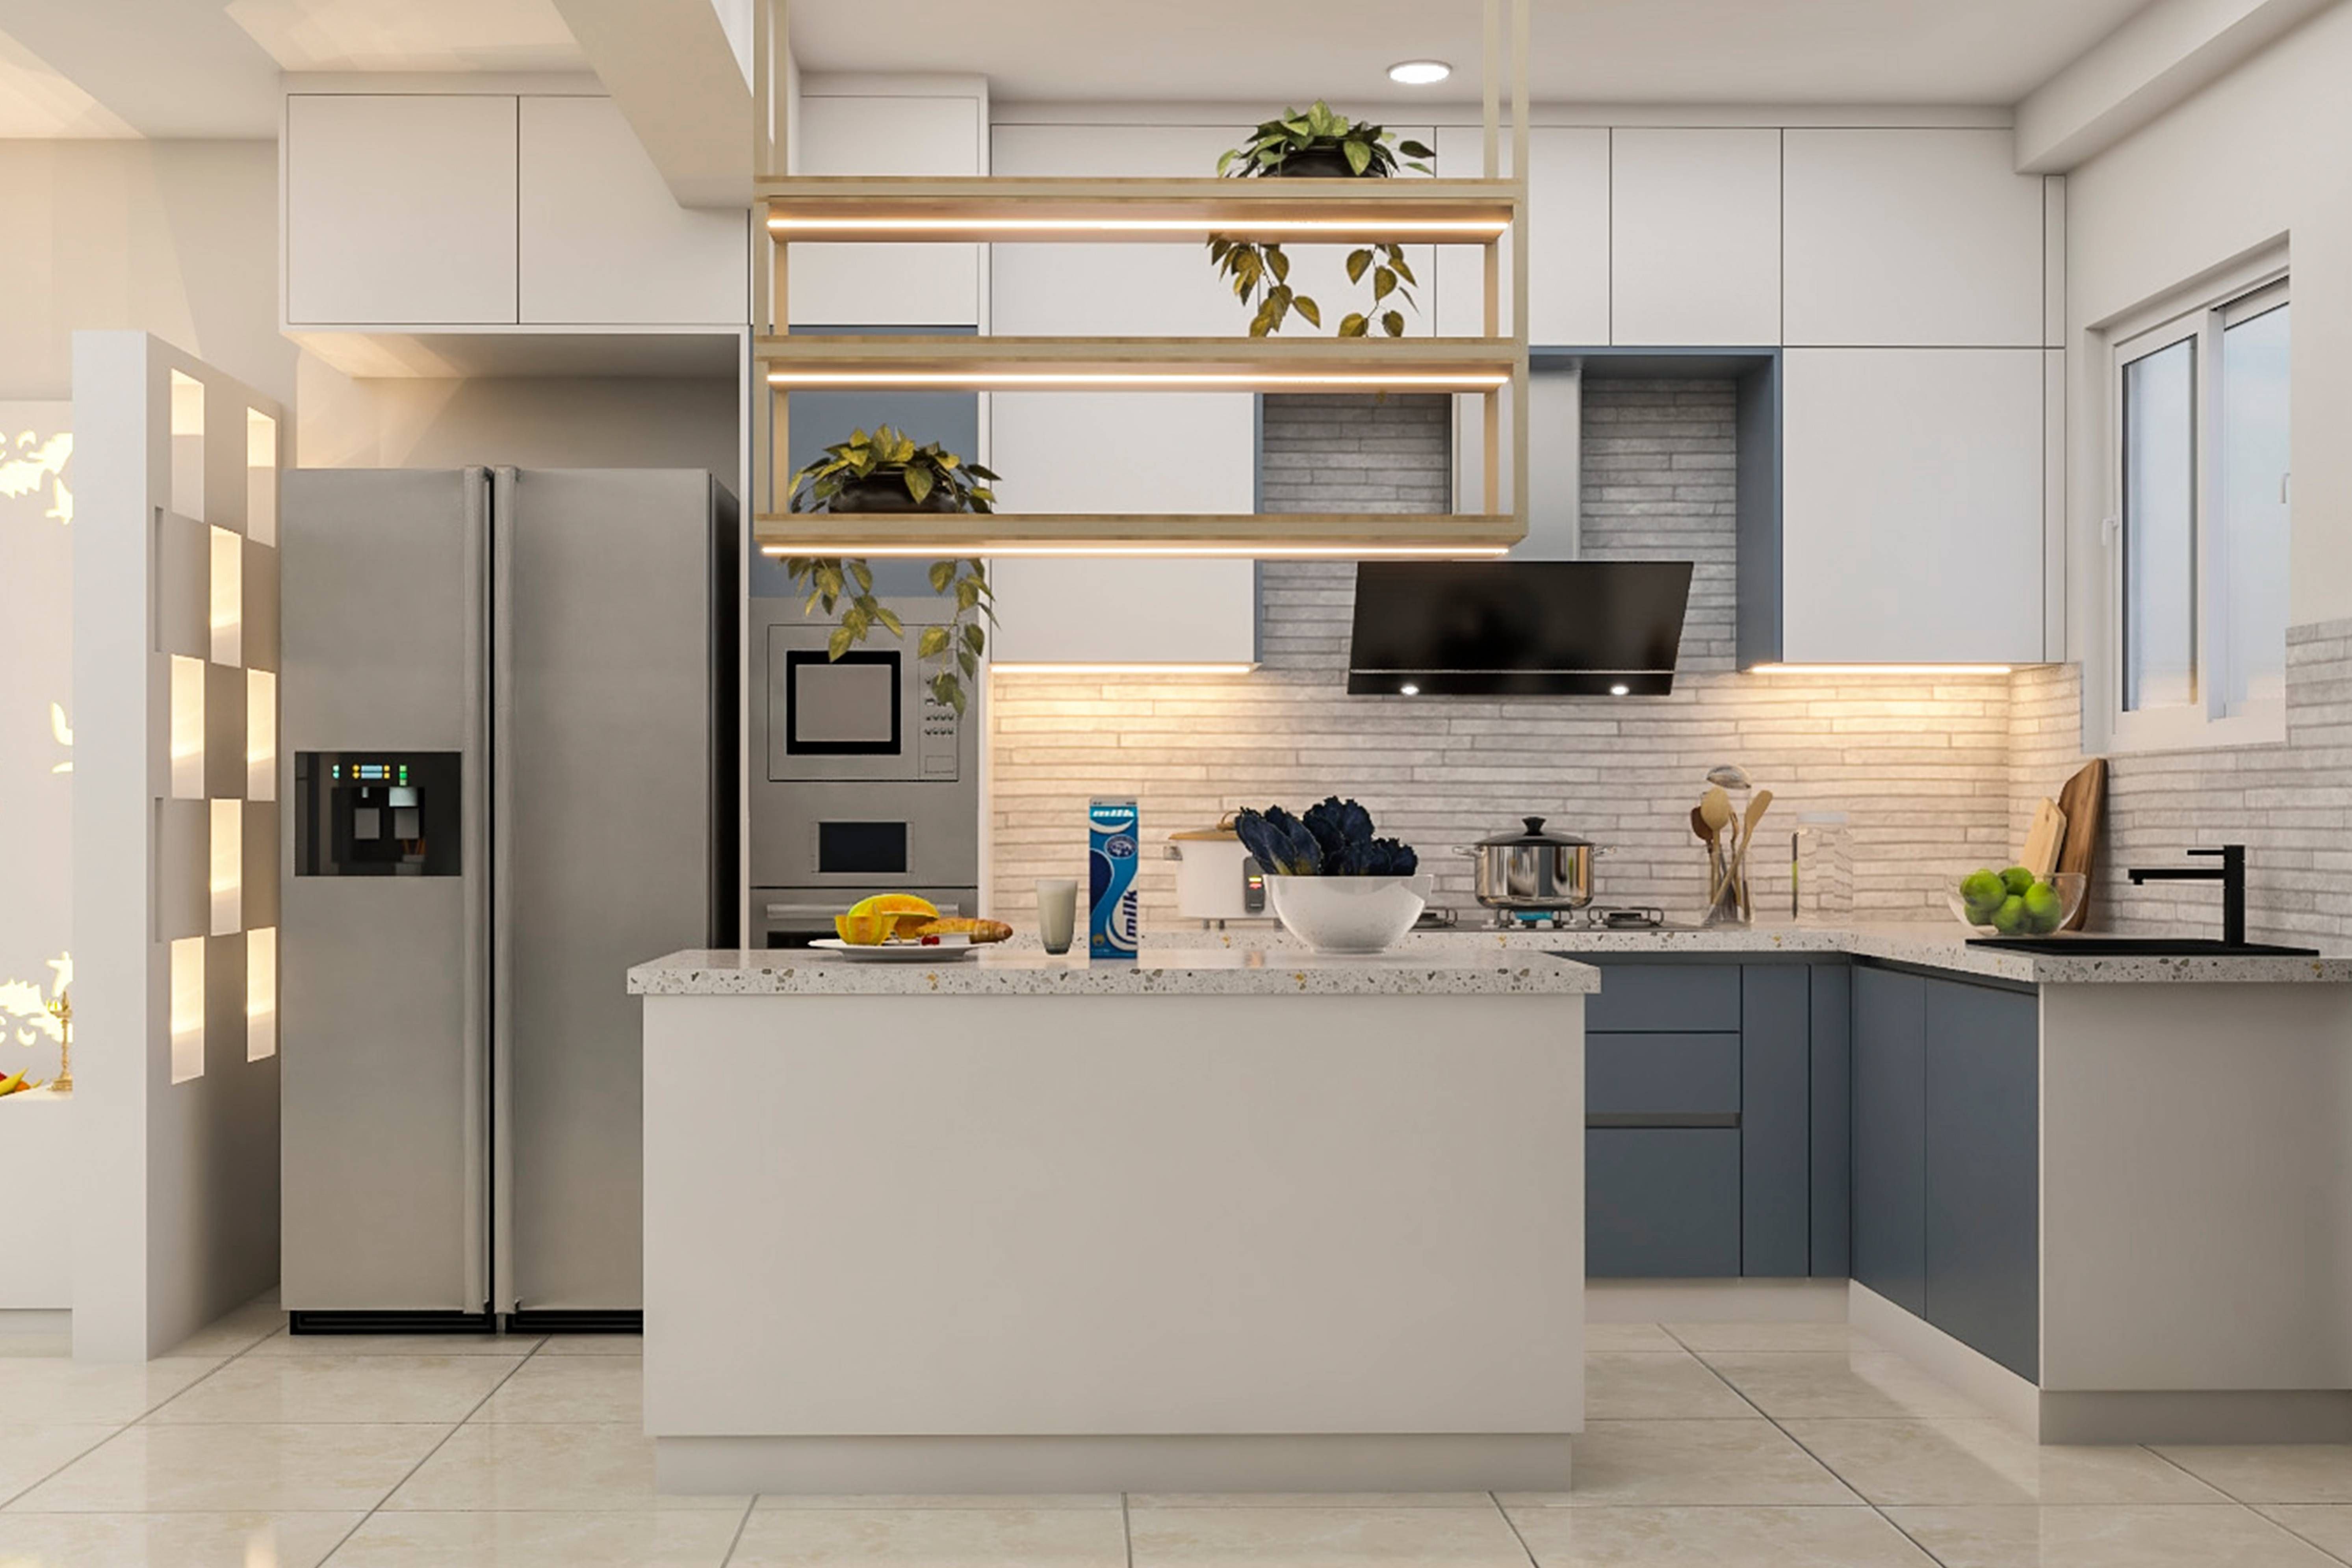 Modern Modular L-Shaped Kitchen Design With Kitchen Island